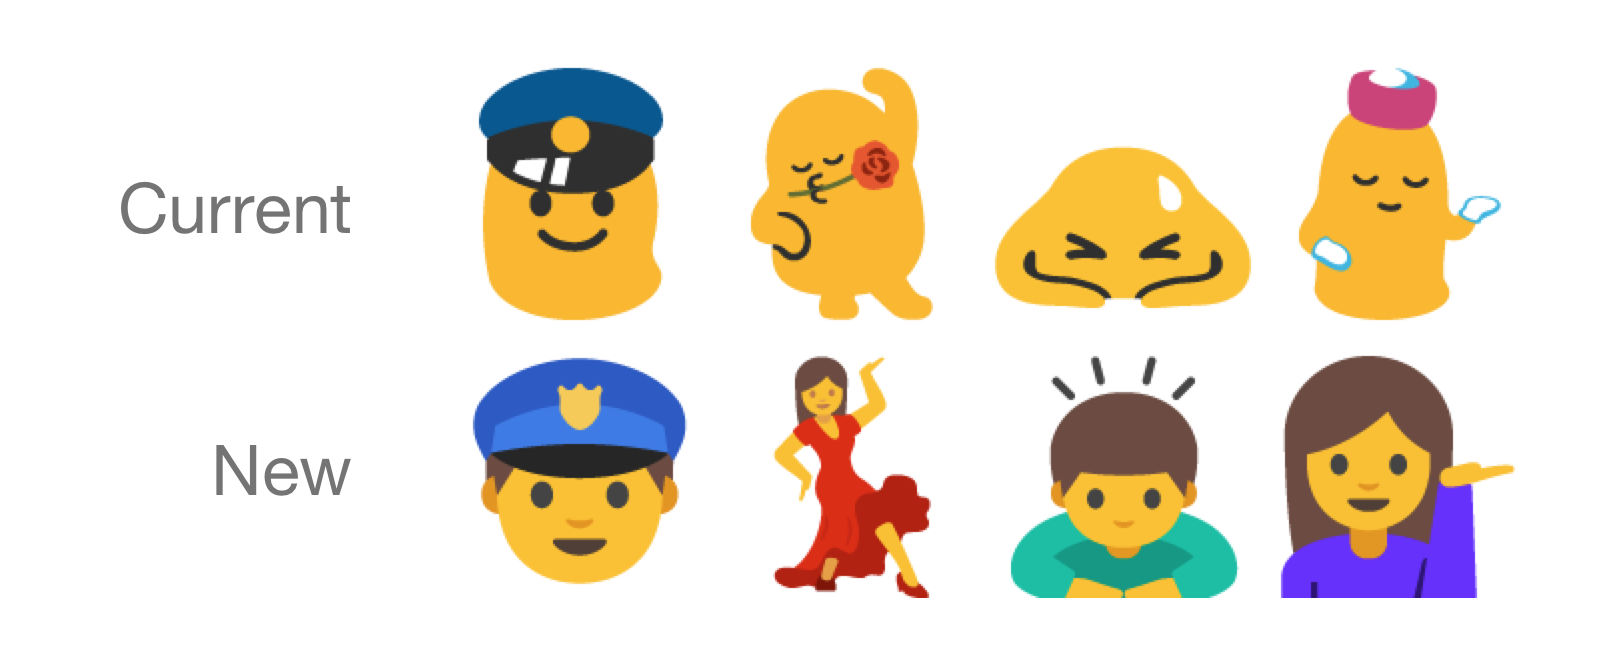 Android N muokkaa toiminnallisempia emoji-kuvia ihmismäisemmiksi.